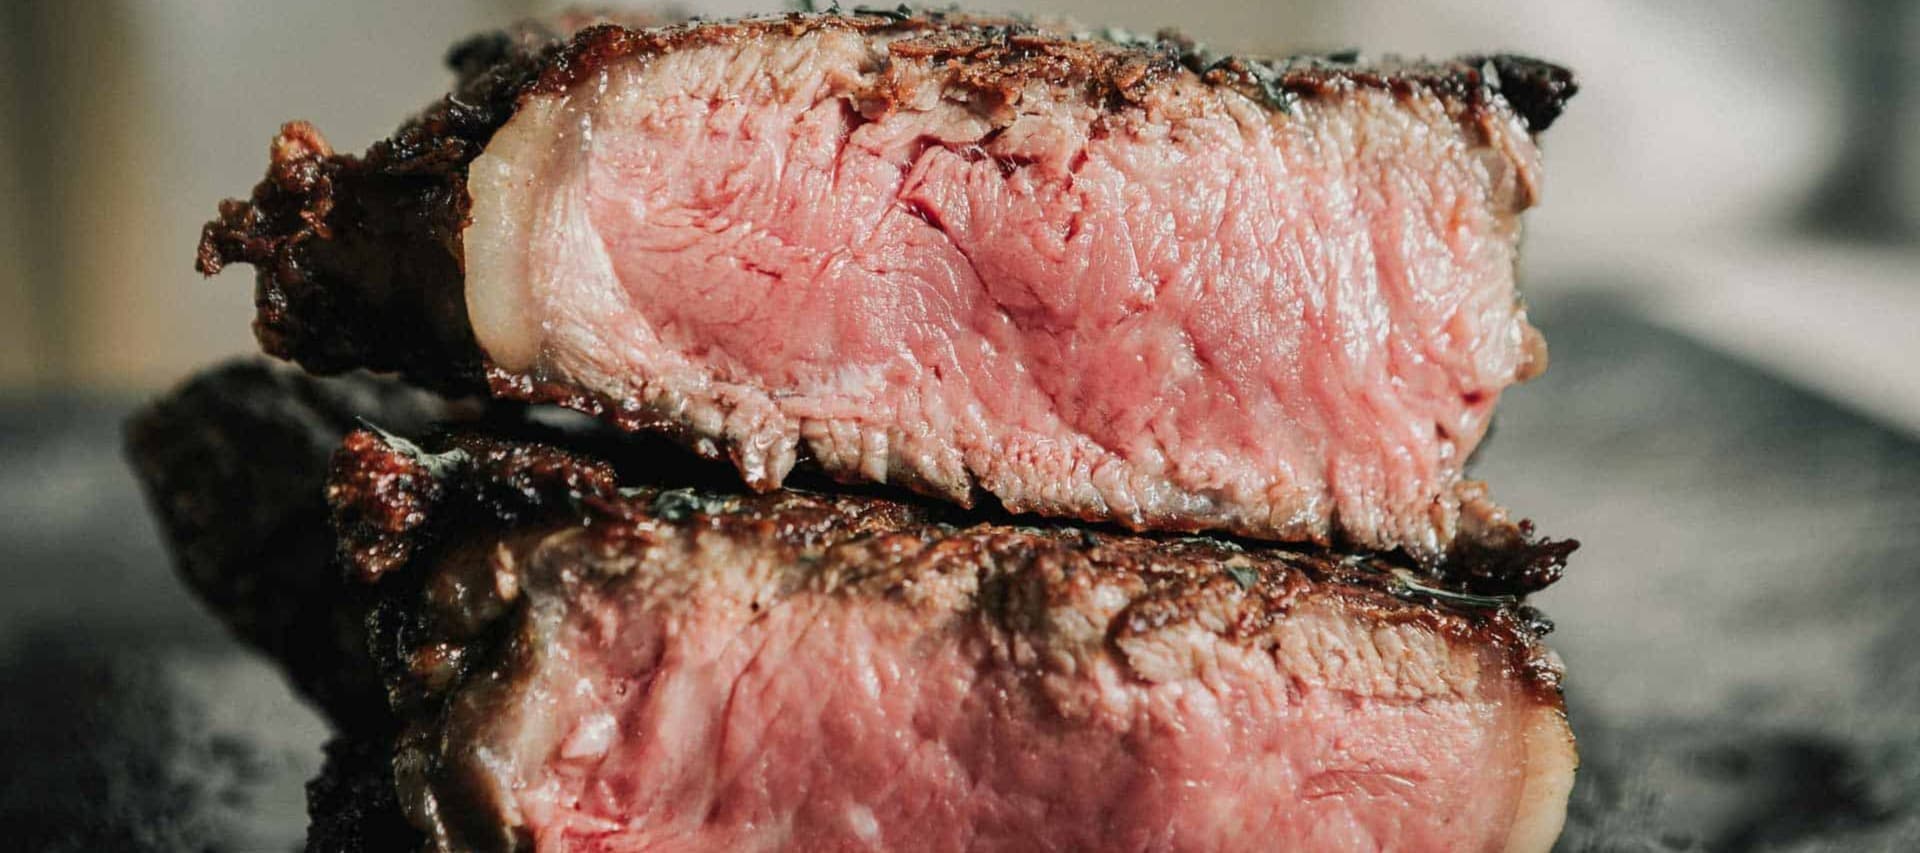 Фото новости: "«Мясо из пробирки» может быть вреднее обычного для экологии в 25 раз"